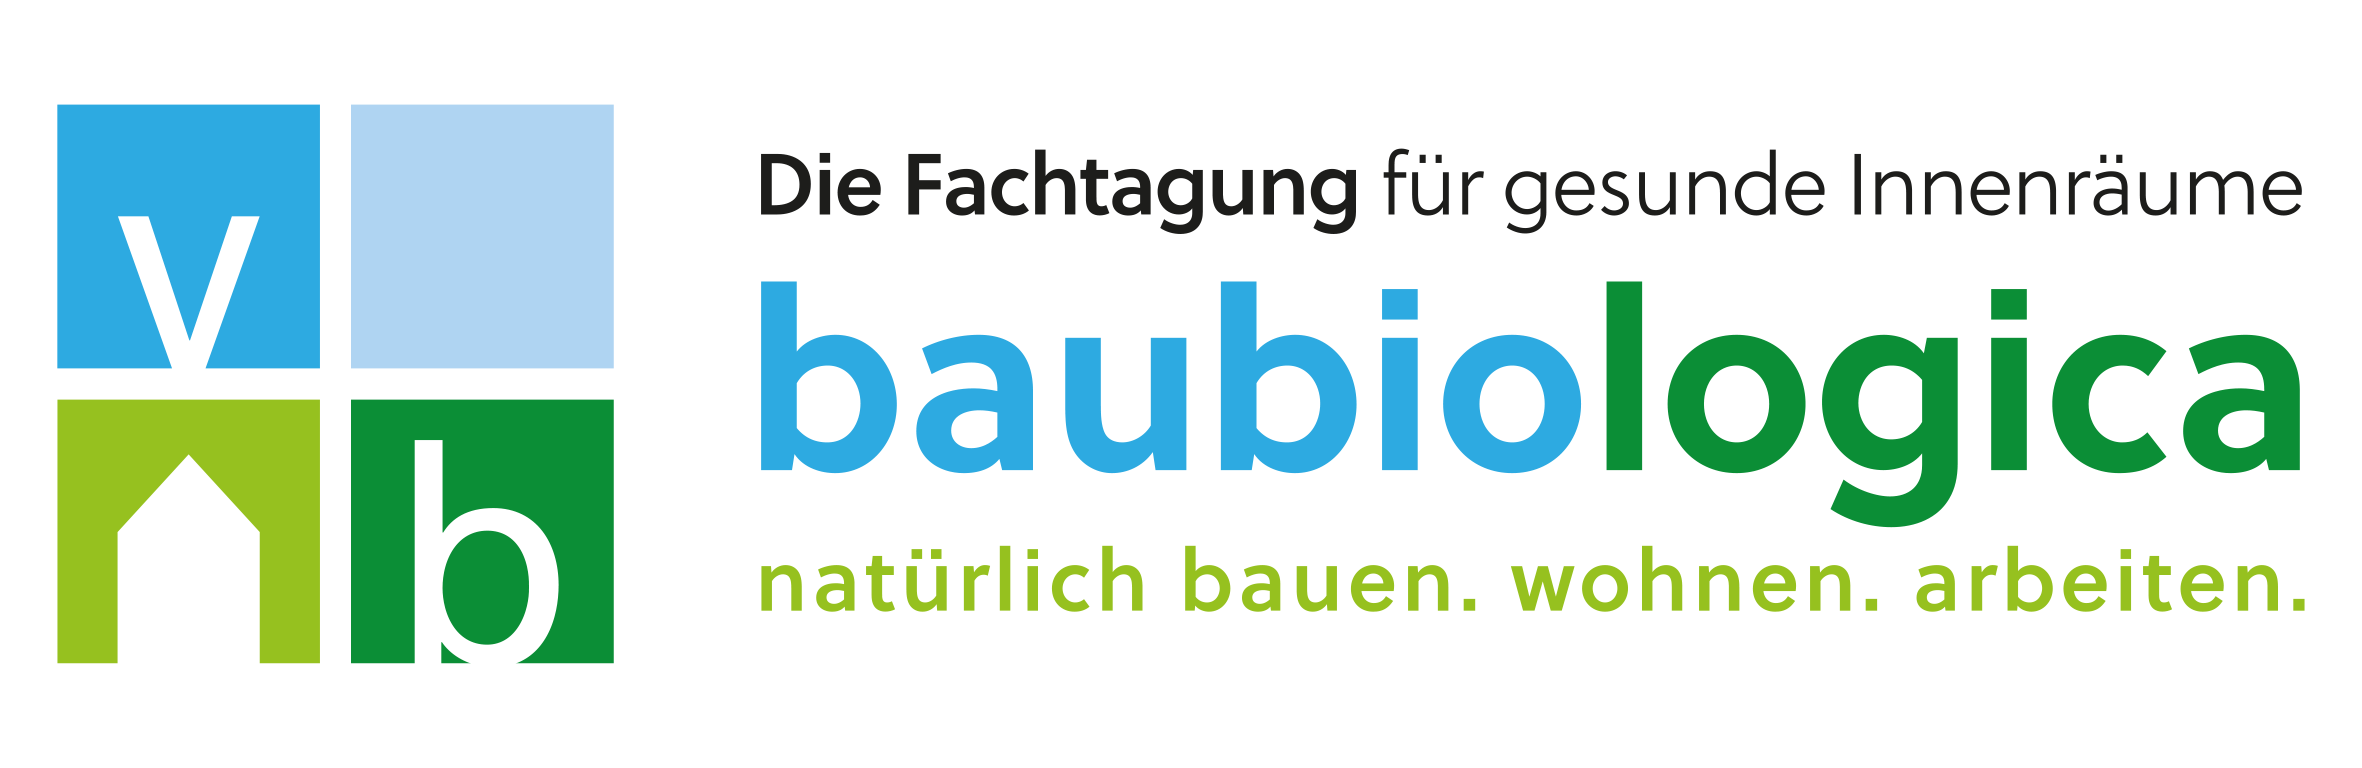 baubiologica logo fachtagung rz